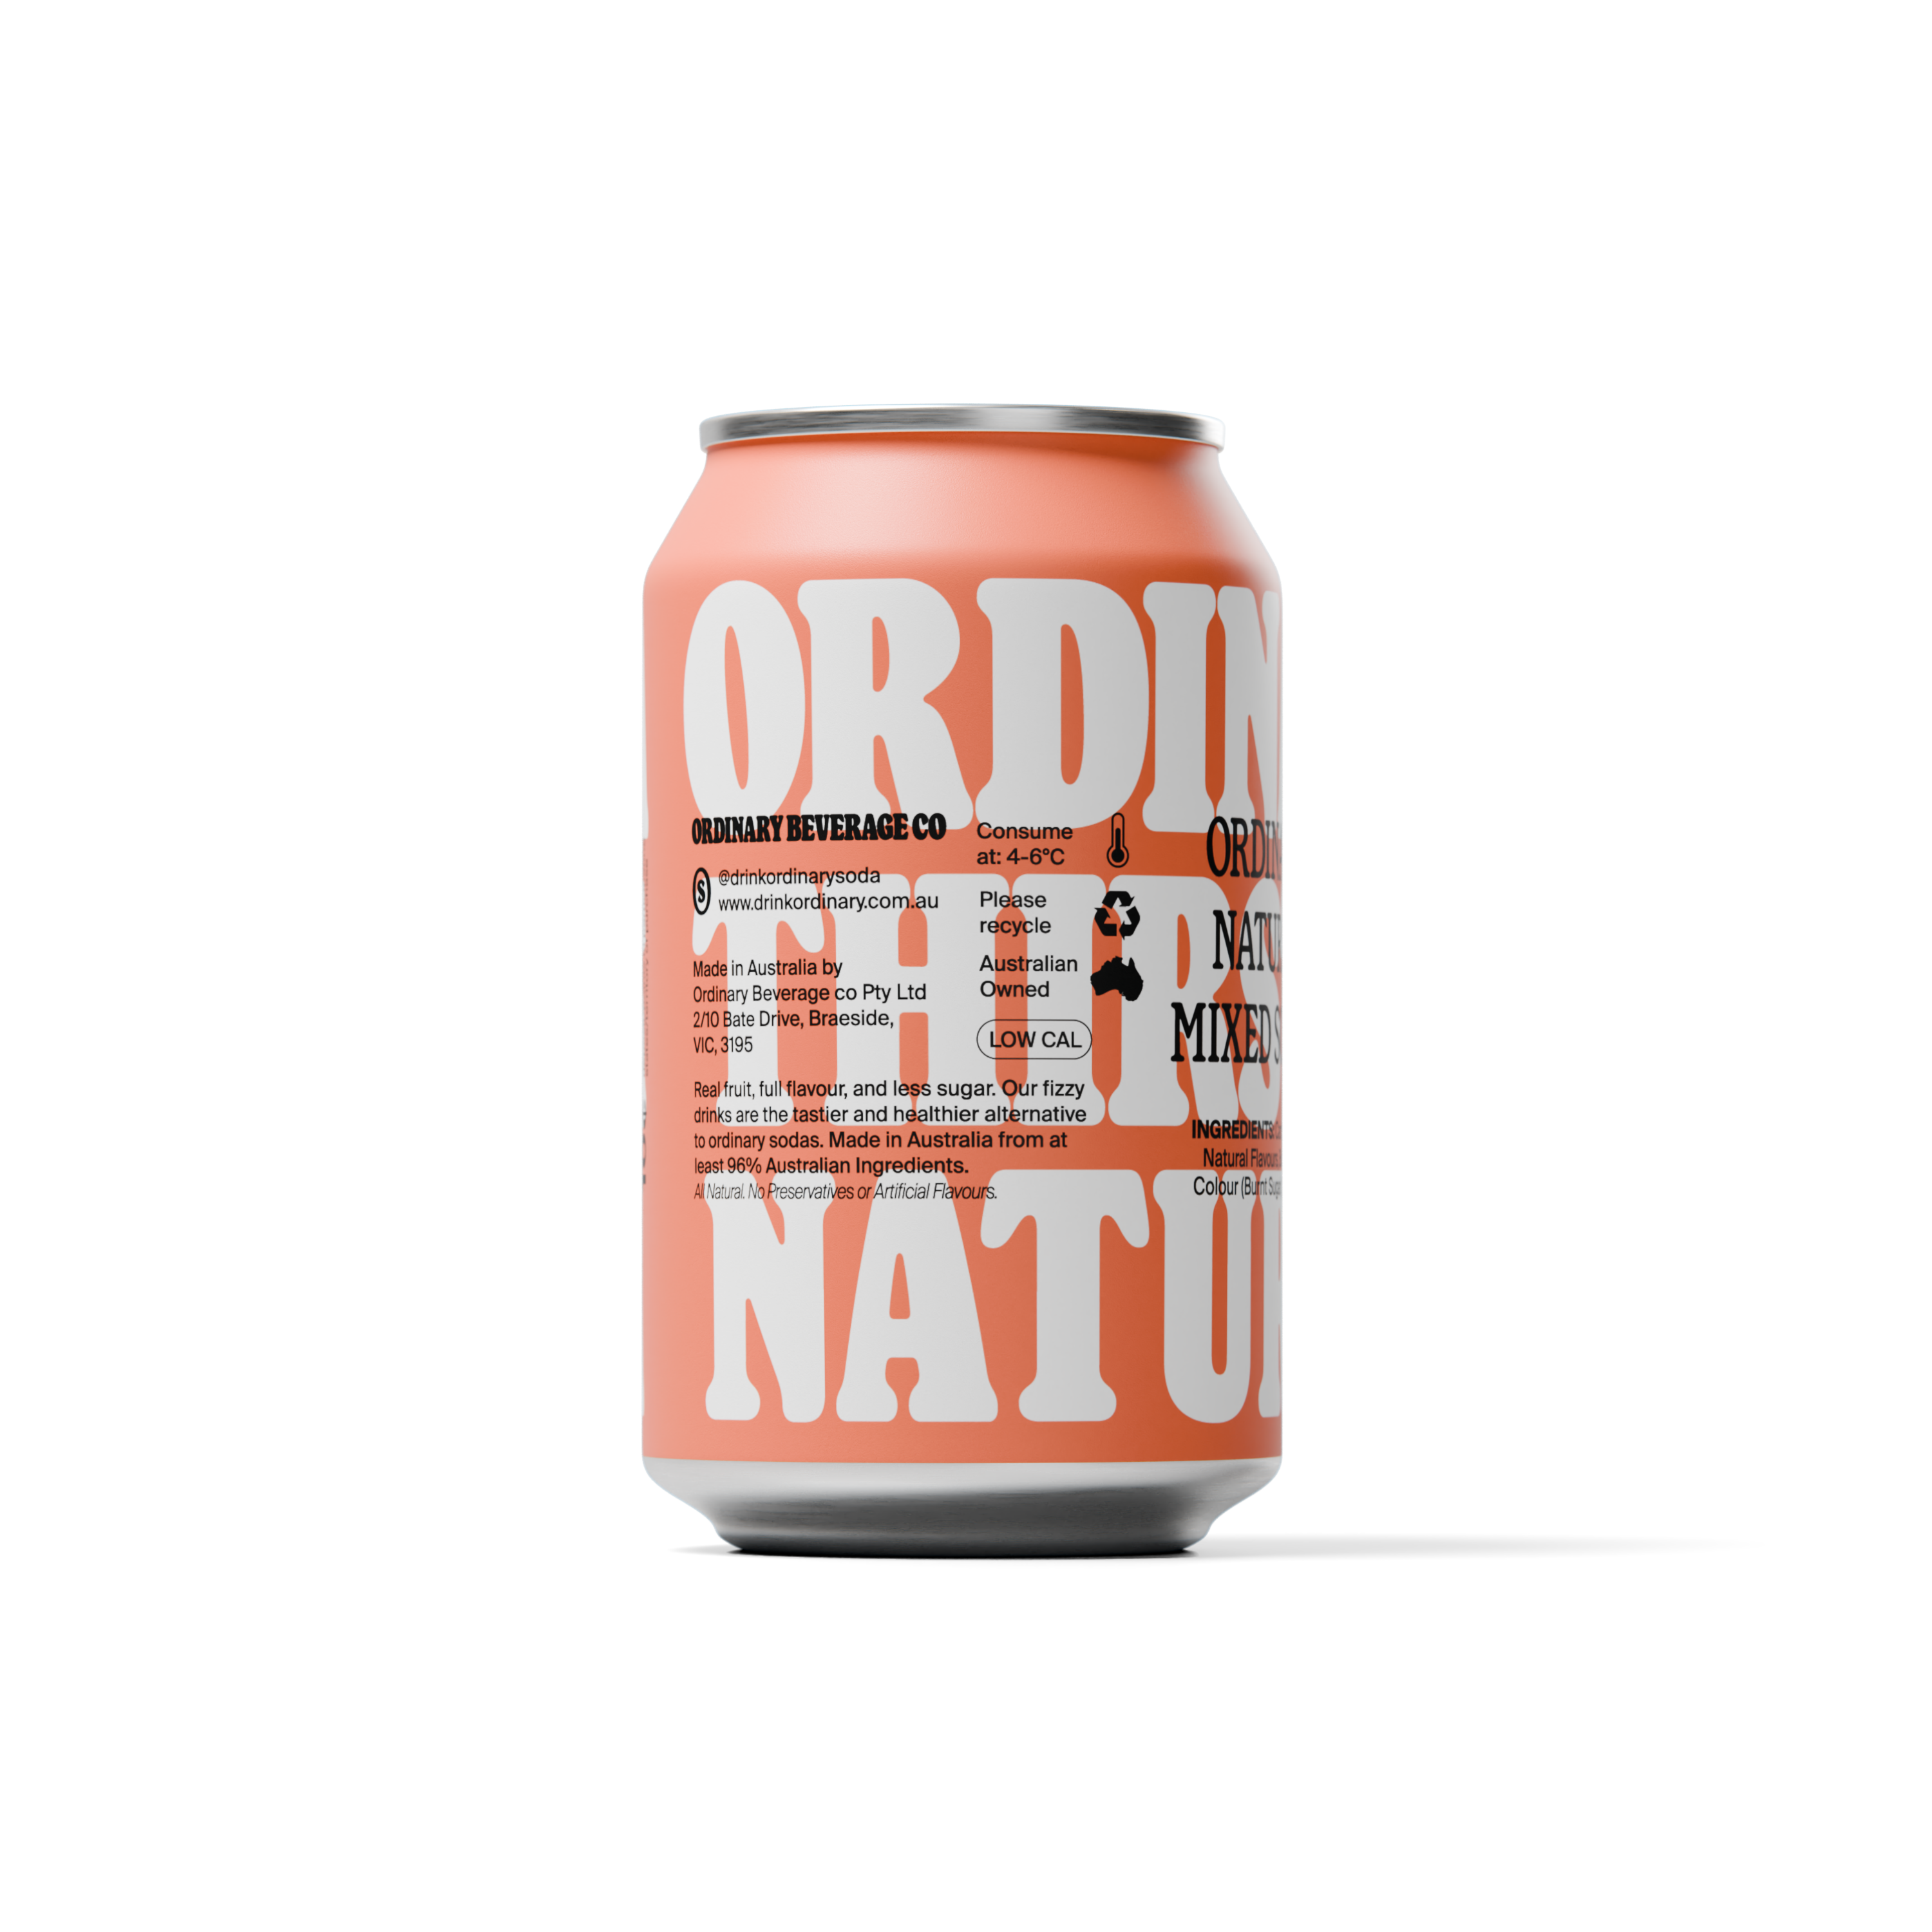 Natural Cola Ordinary Soda 12 x 330ml